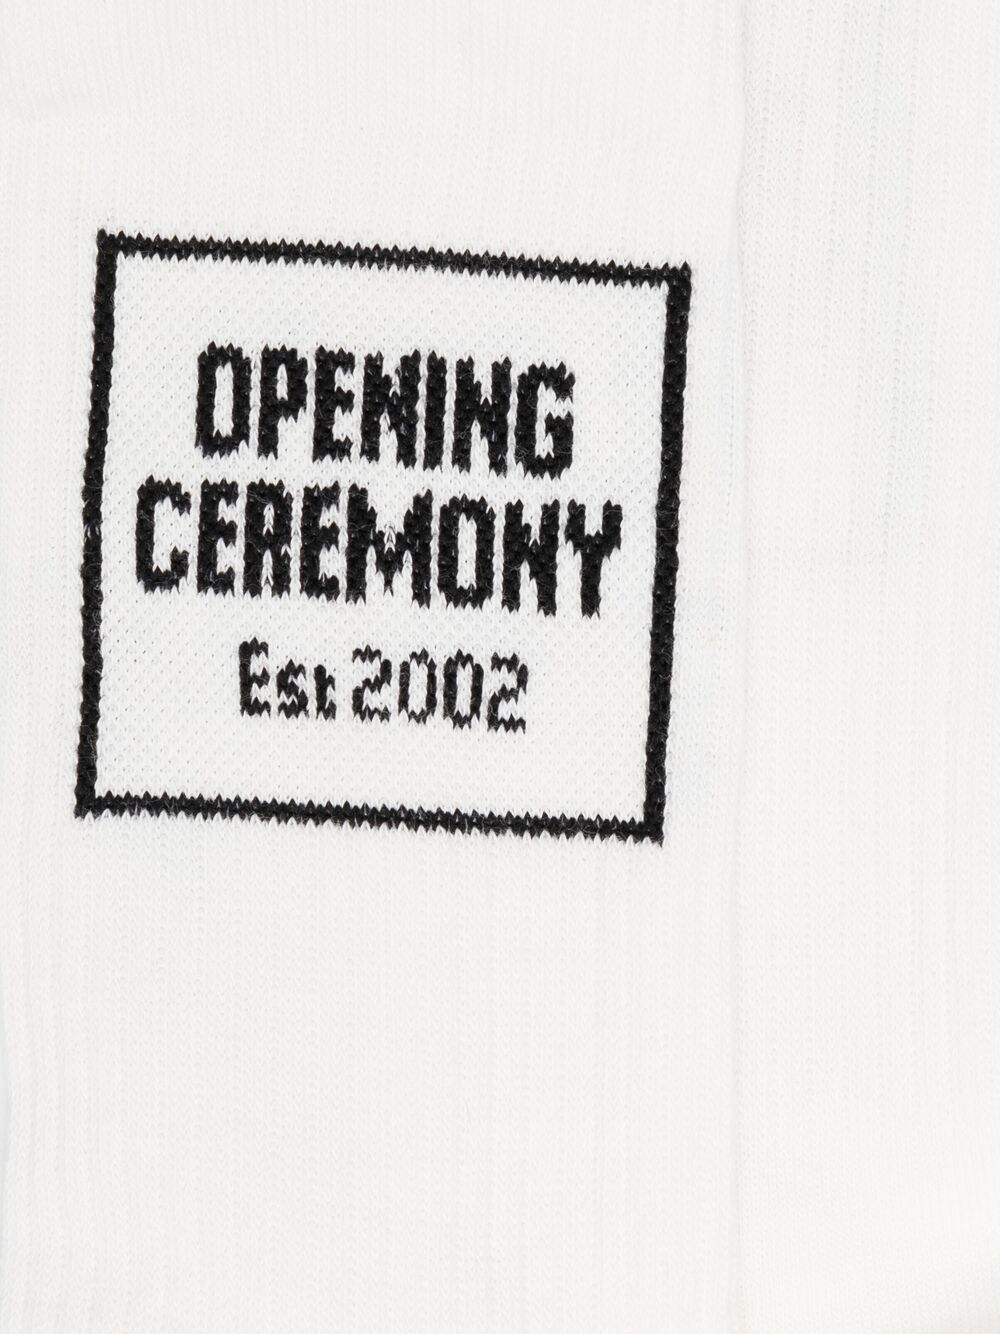 фото Opening ceremony носки вязки интарсия с логотипом